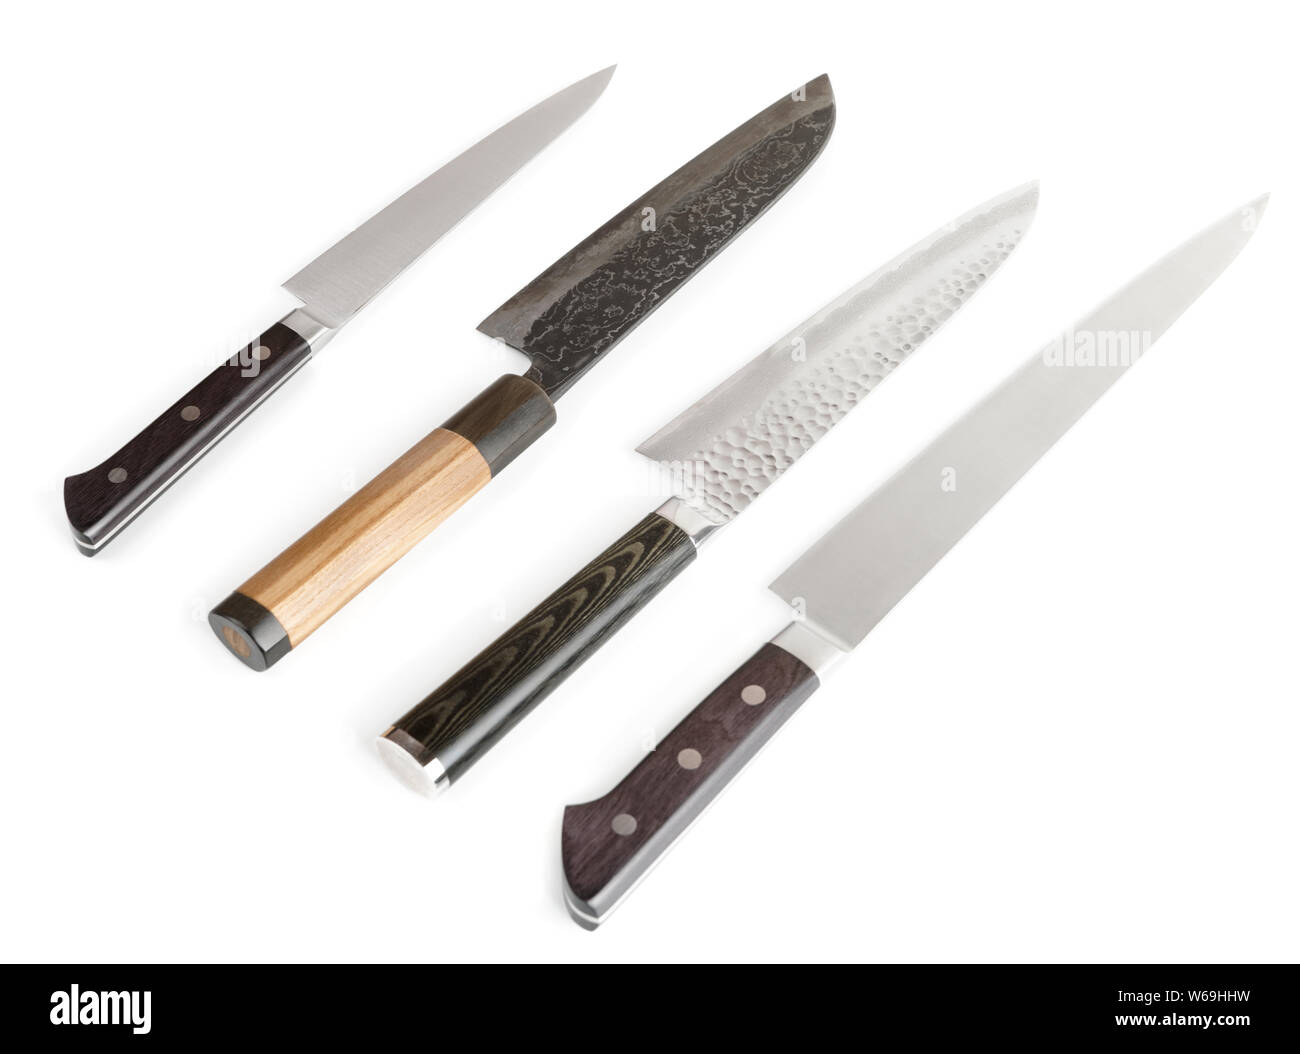 https://c8.alamy.com/compes/w69hhw/juego-de-cuchillos-de-cocina-nuevos-y-usados-aislado-sobre-fondo-blanco-w69hhw.jpg